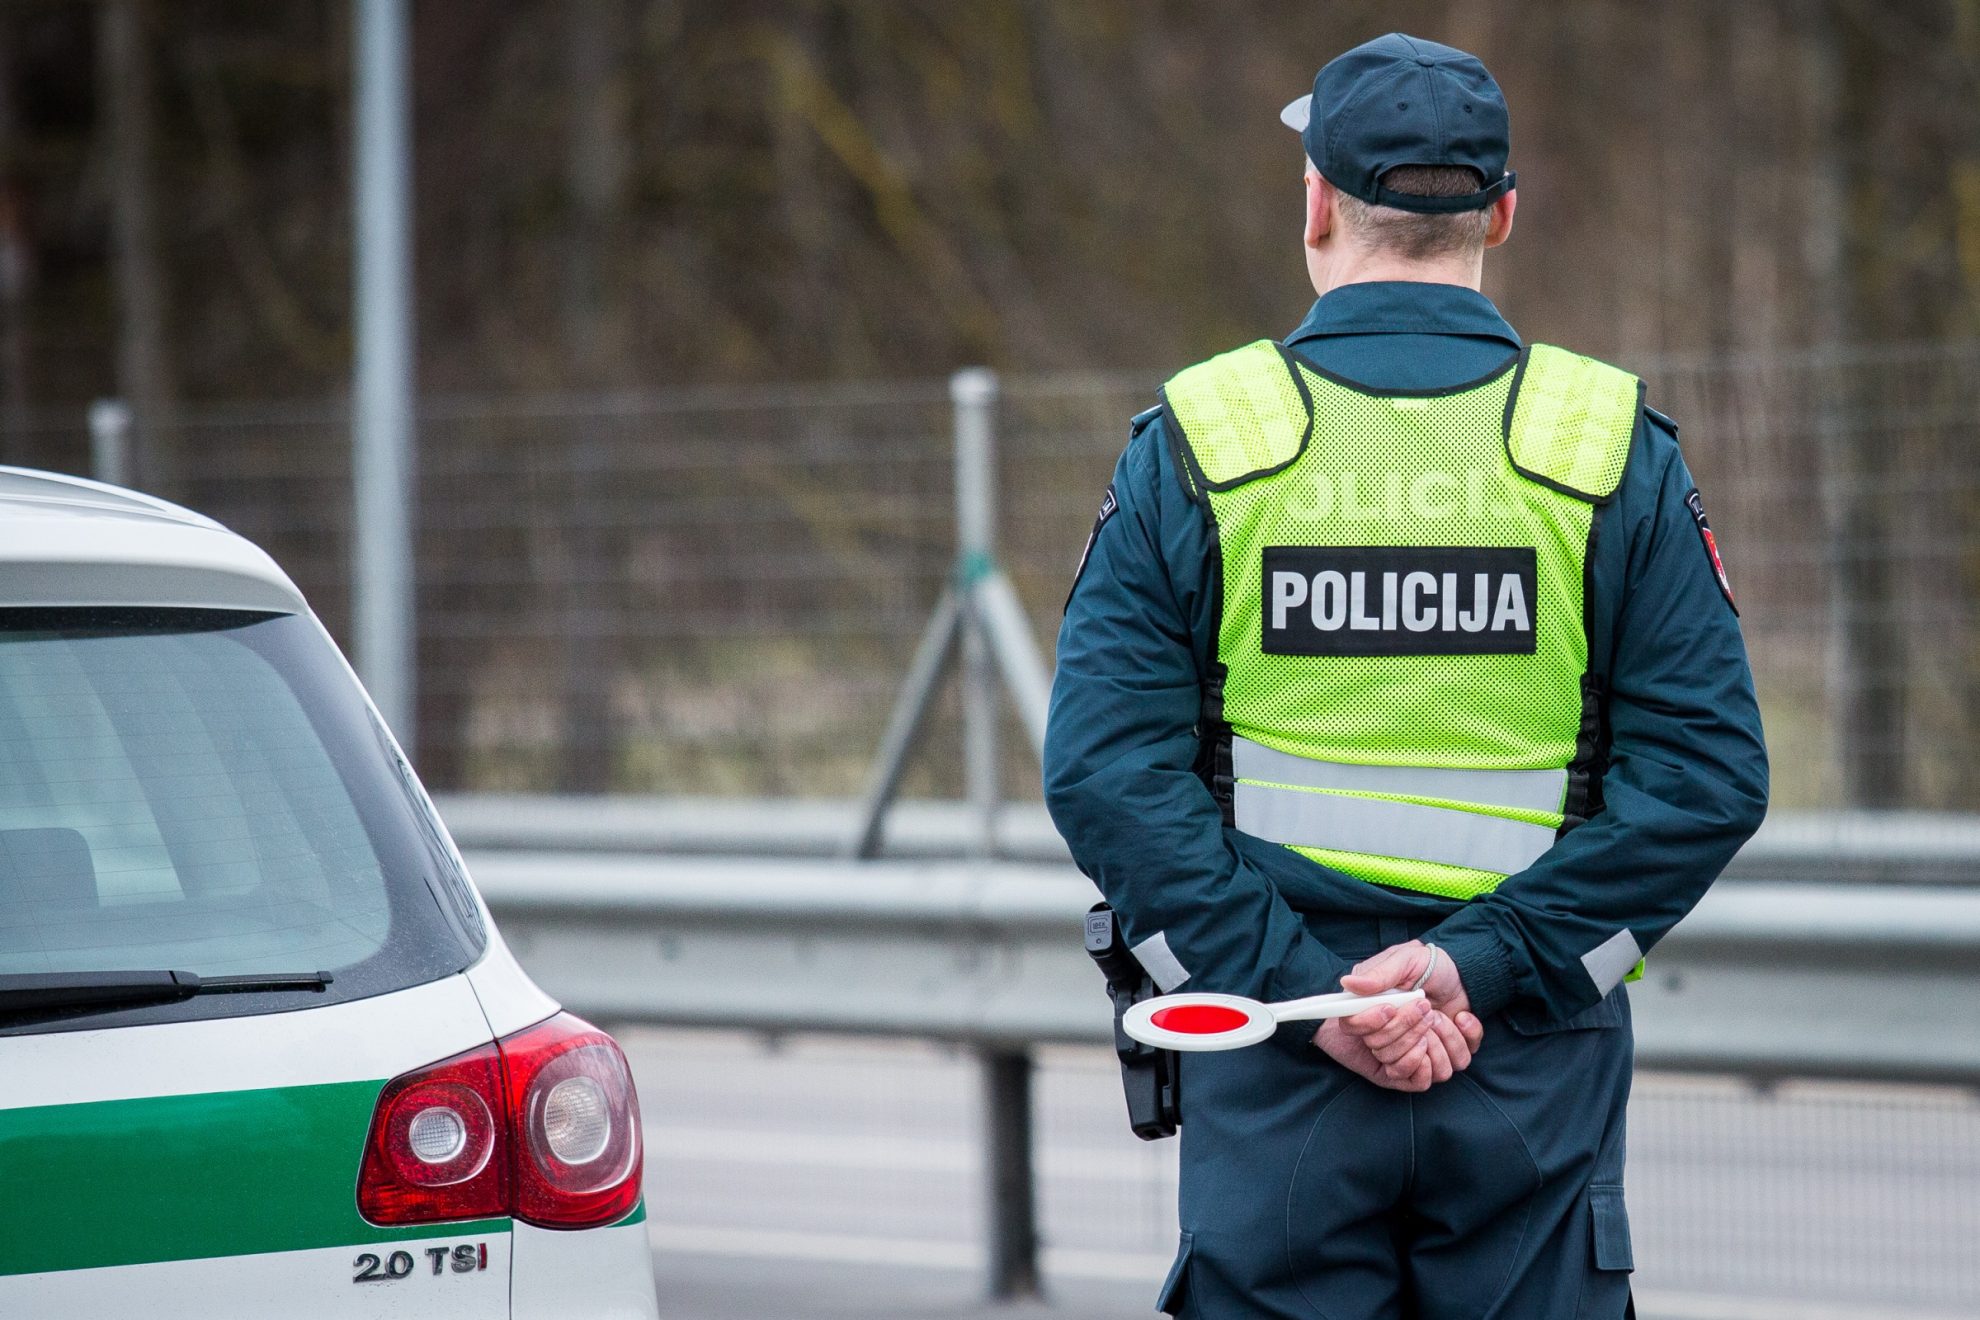 Minint tarptautinę Europos dieną be žuvusiųjų keliuose, Lietuvos policijos pareigūnai ketvirtadienį sustiprins patruliavimą Lietuvos keliuose.